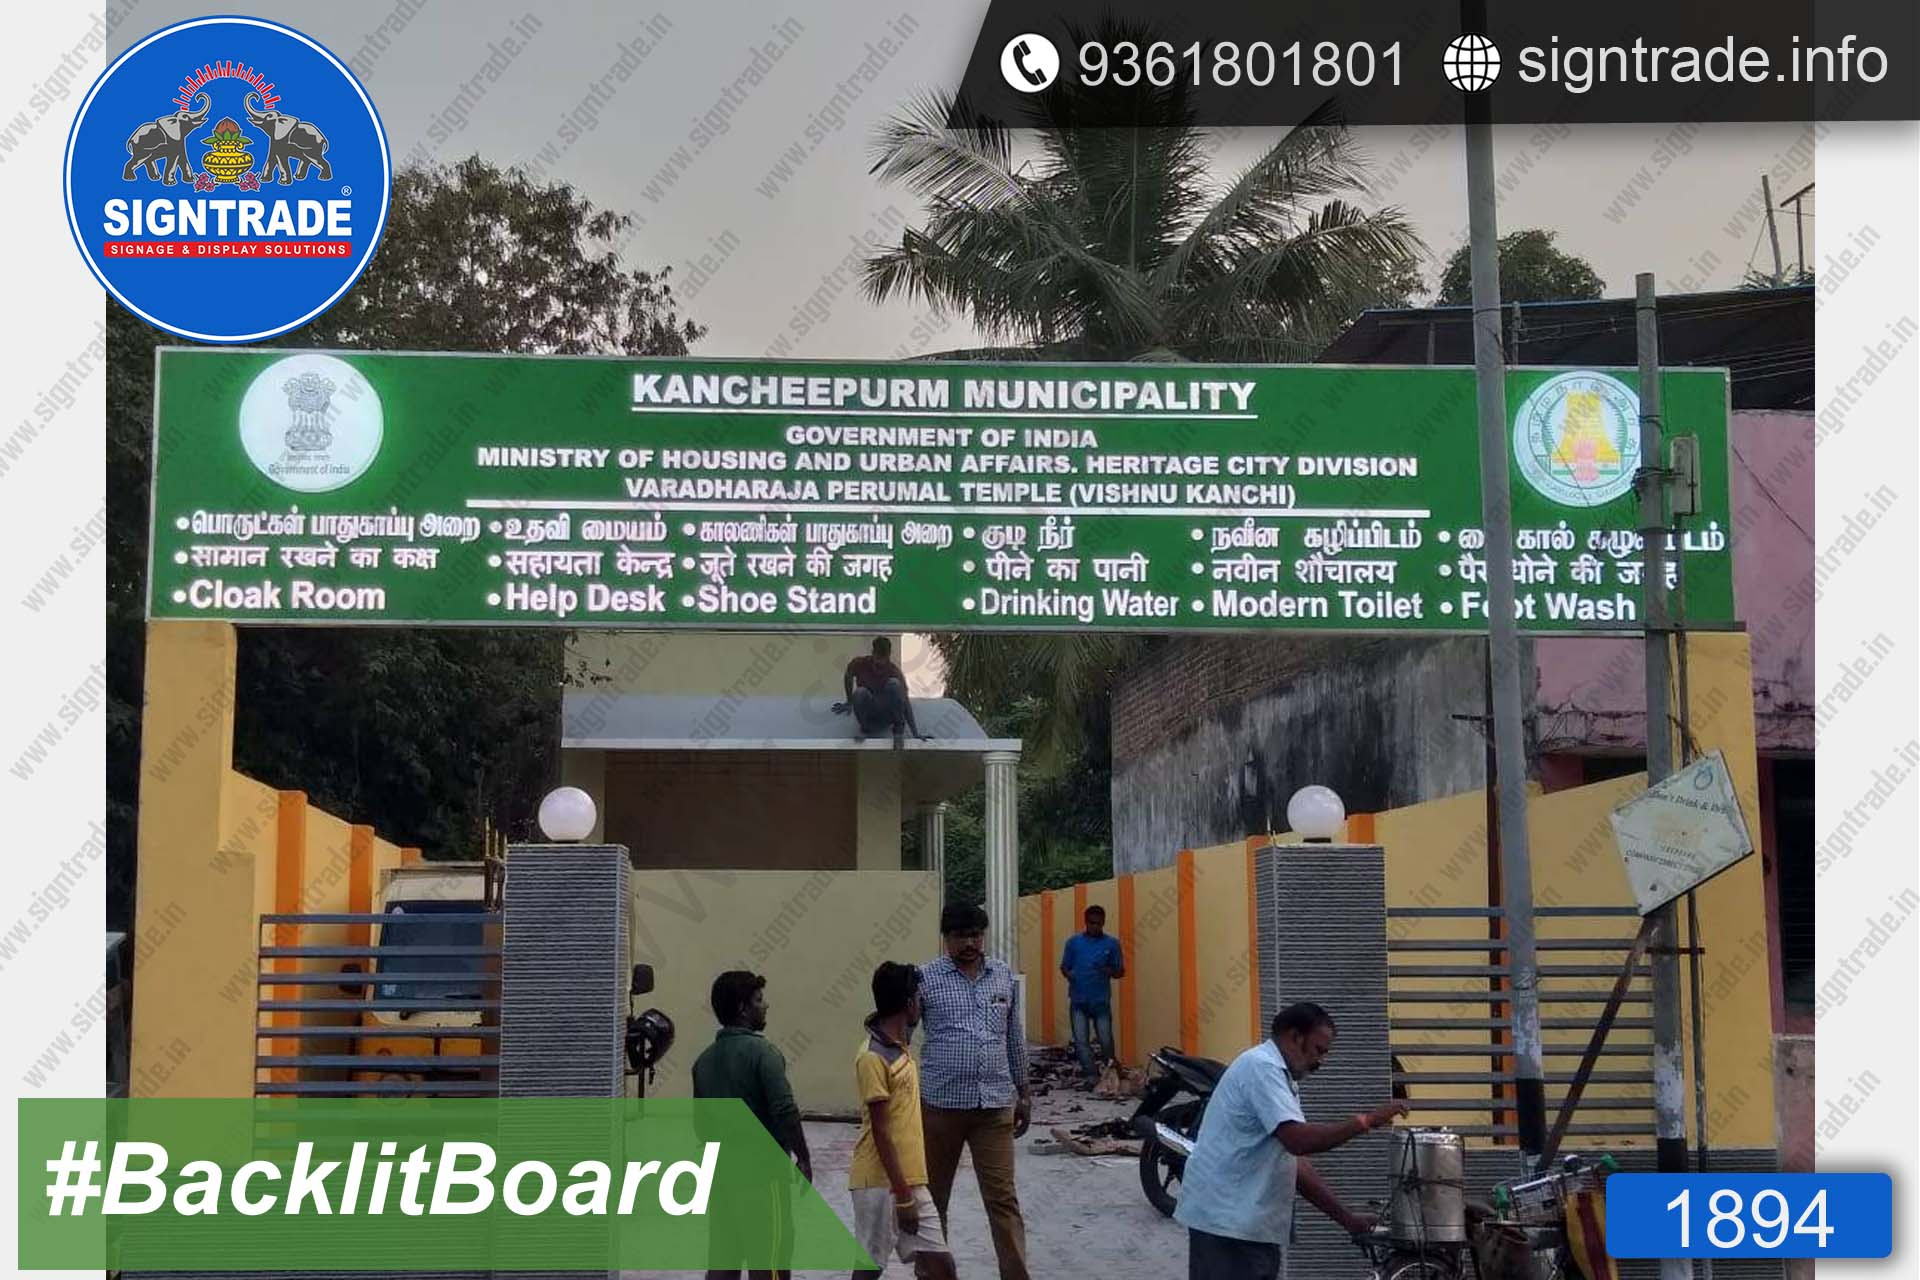 Kancheepuram Municipality Backlit Board